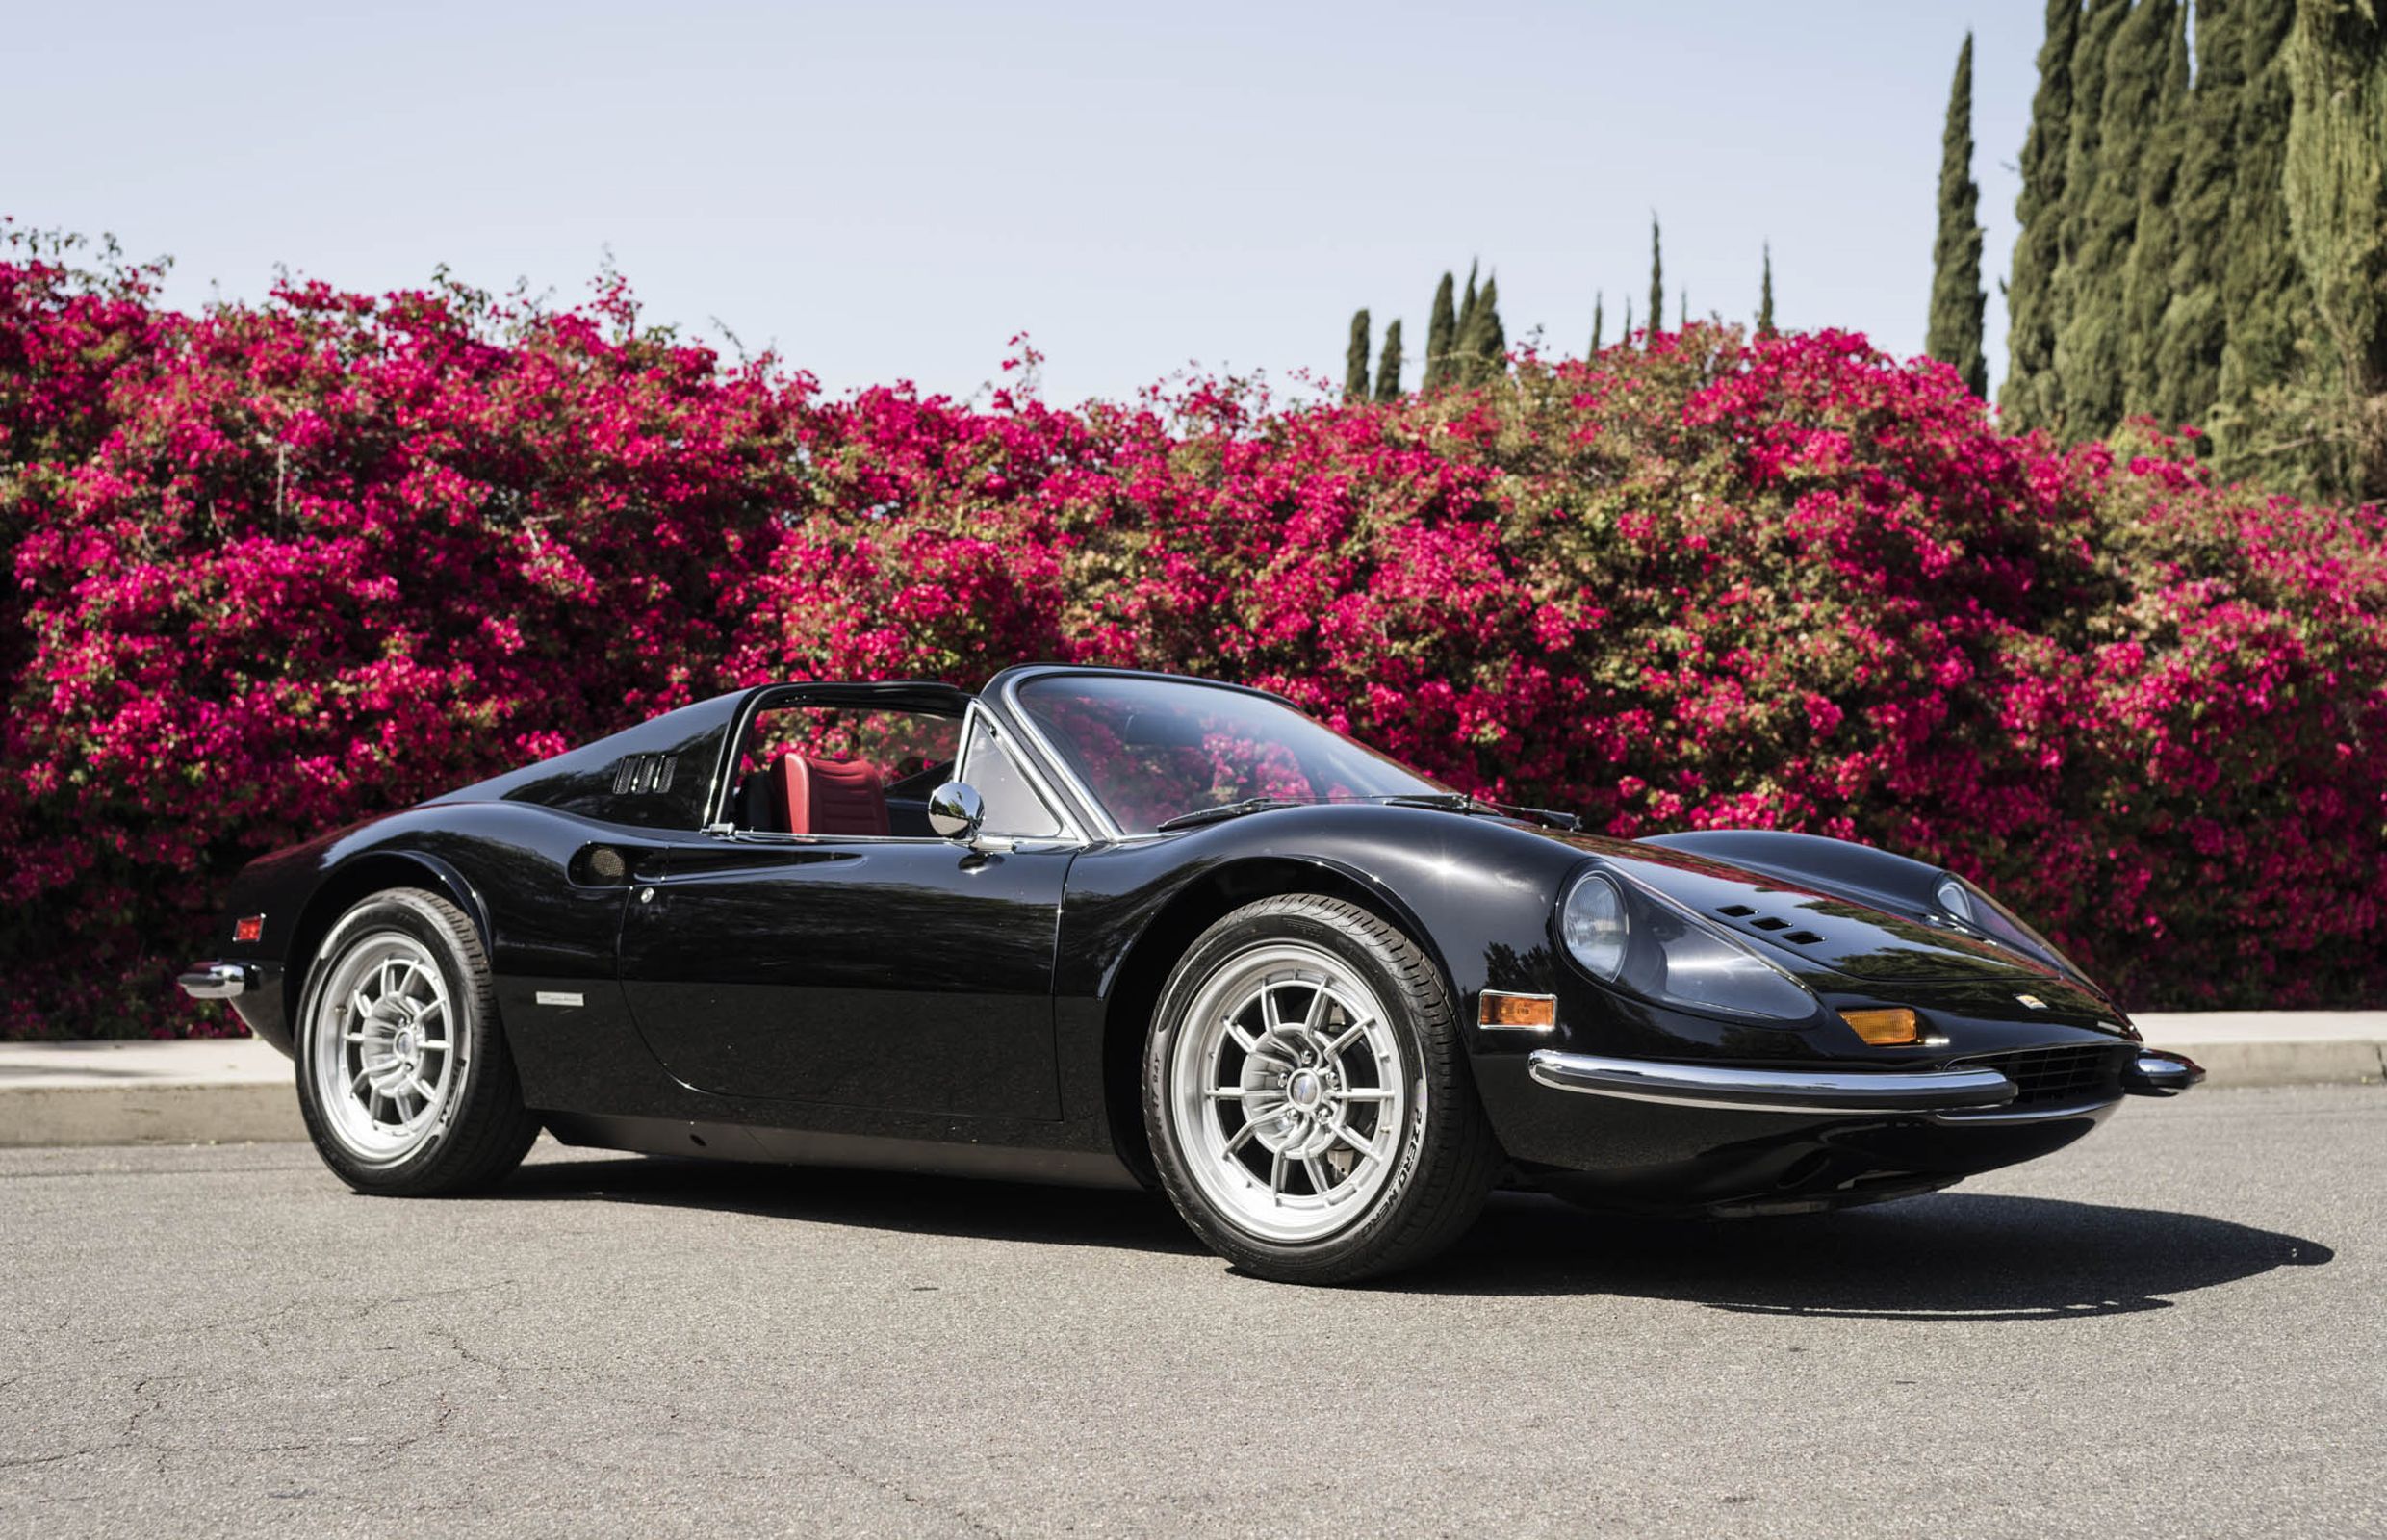 This enthusiast spent $1 million to modernize his Ferrari Dino 